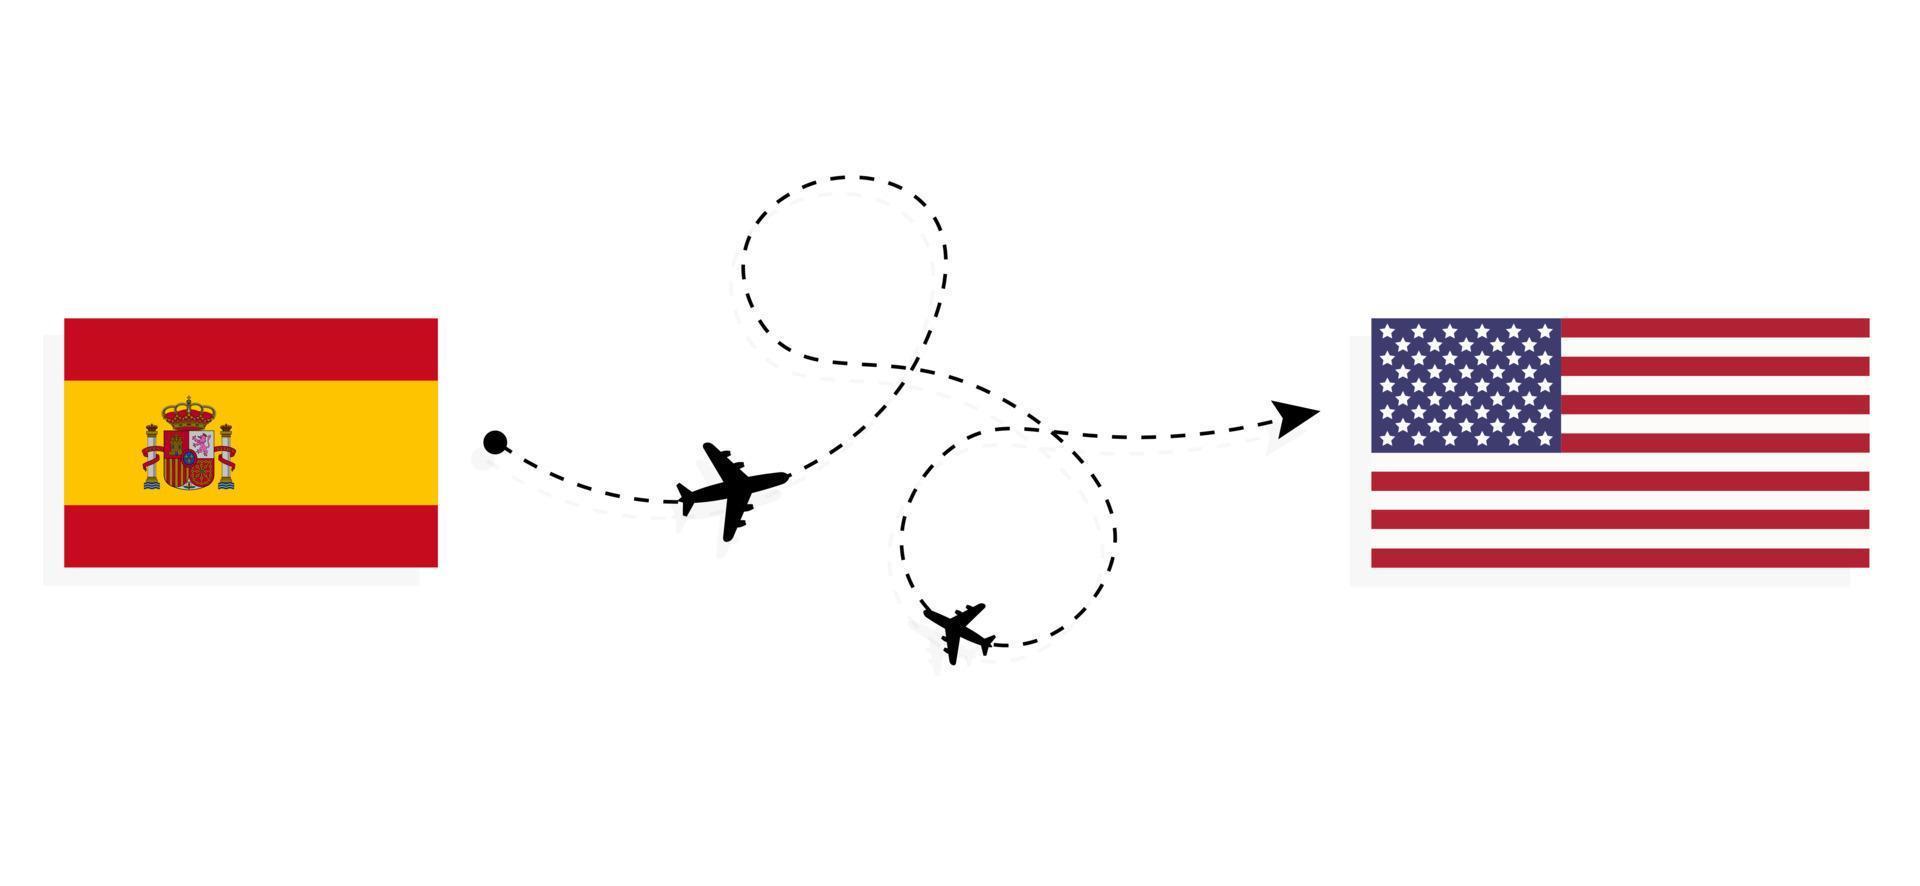 vol et voyage de l'espagne aux états-unis par concept de voyage en avion de passagers vecteur